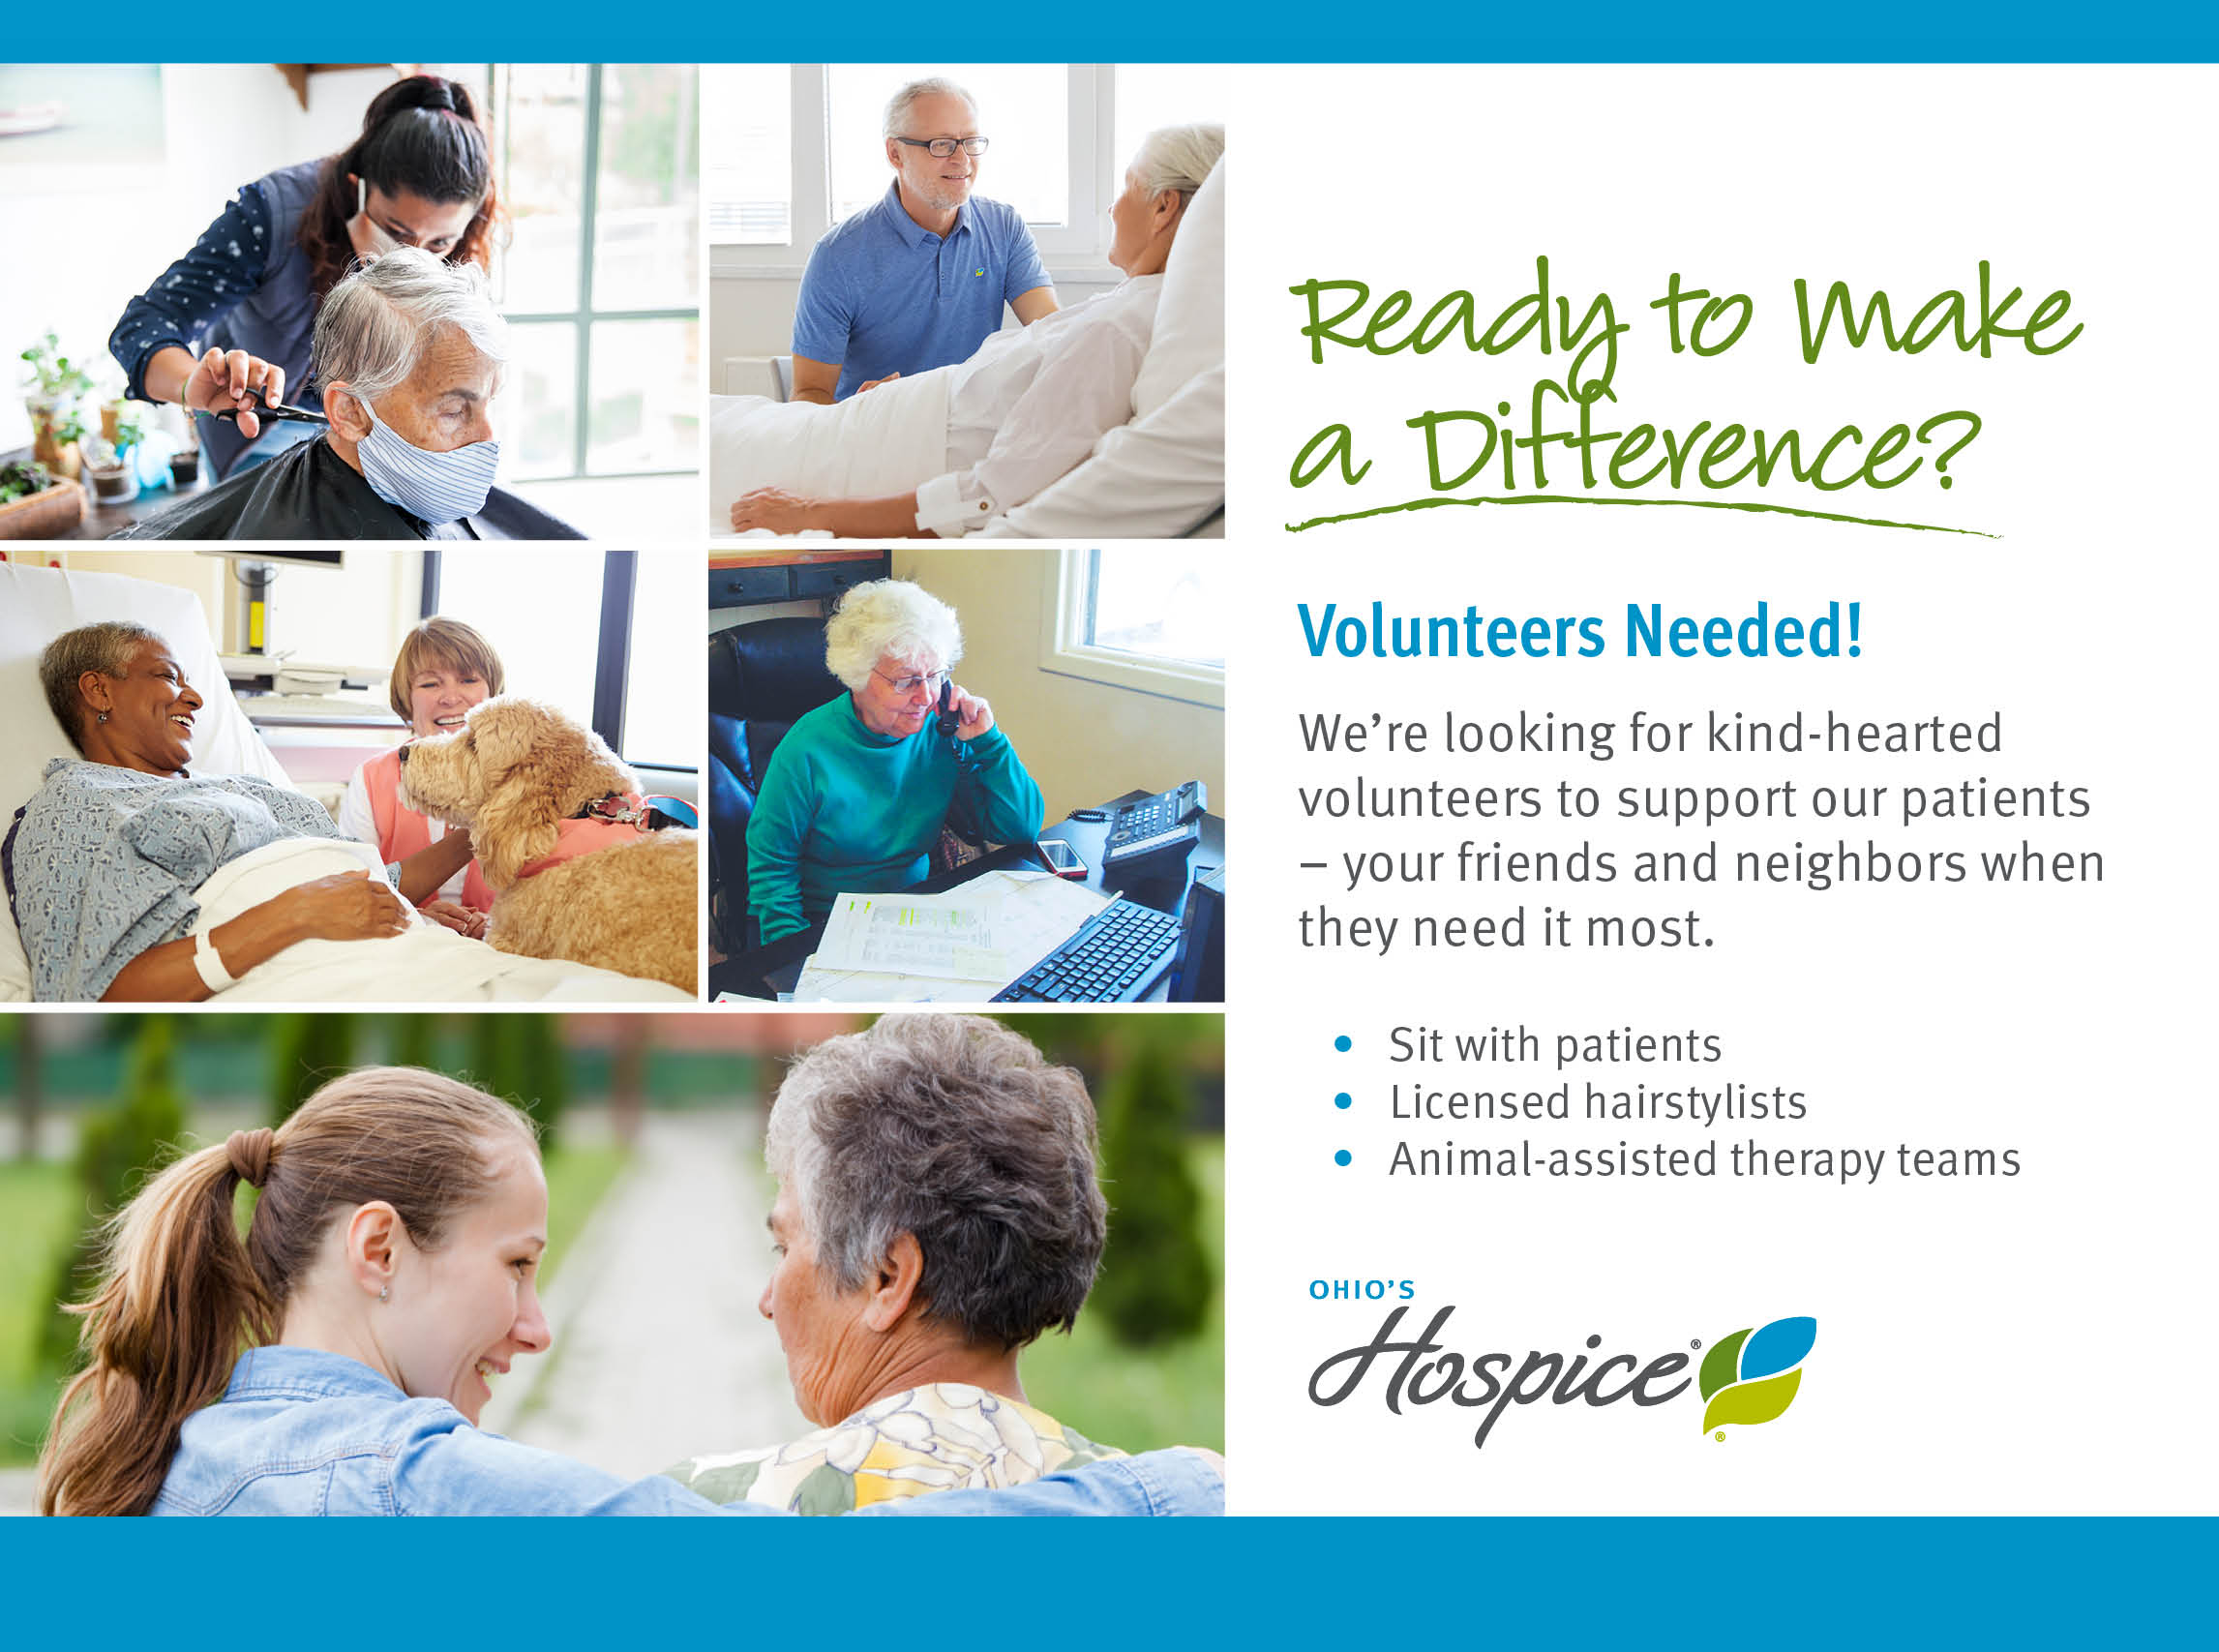 Volunteers Needed. Ohio's Hospice